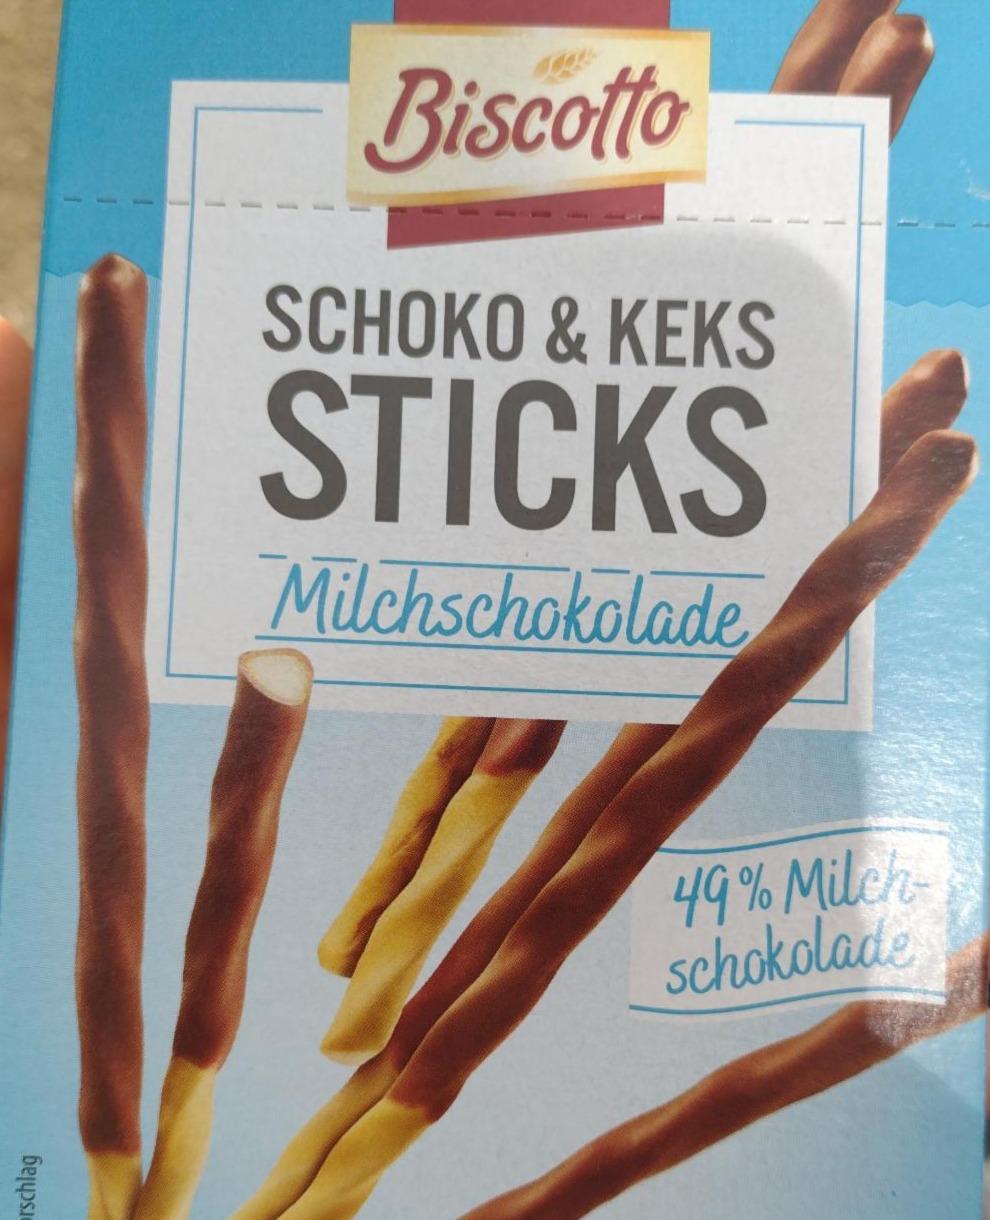 Фото - Schoko & keks sticks 49% milchschokolade Biscotto